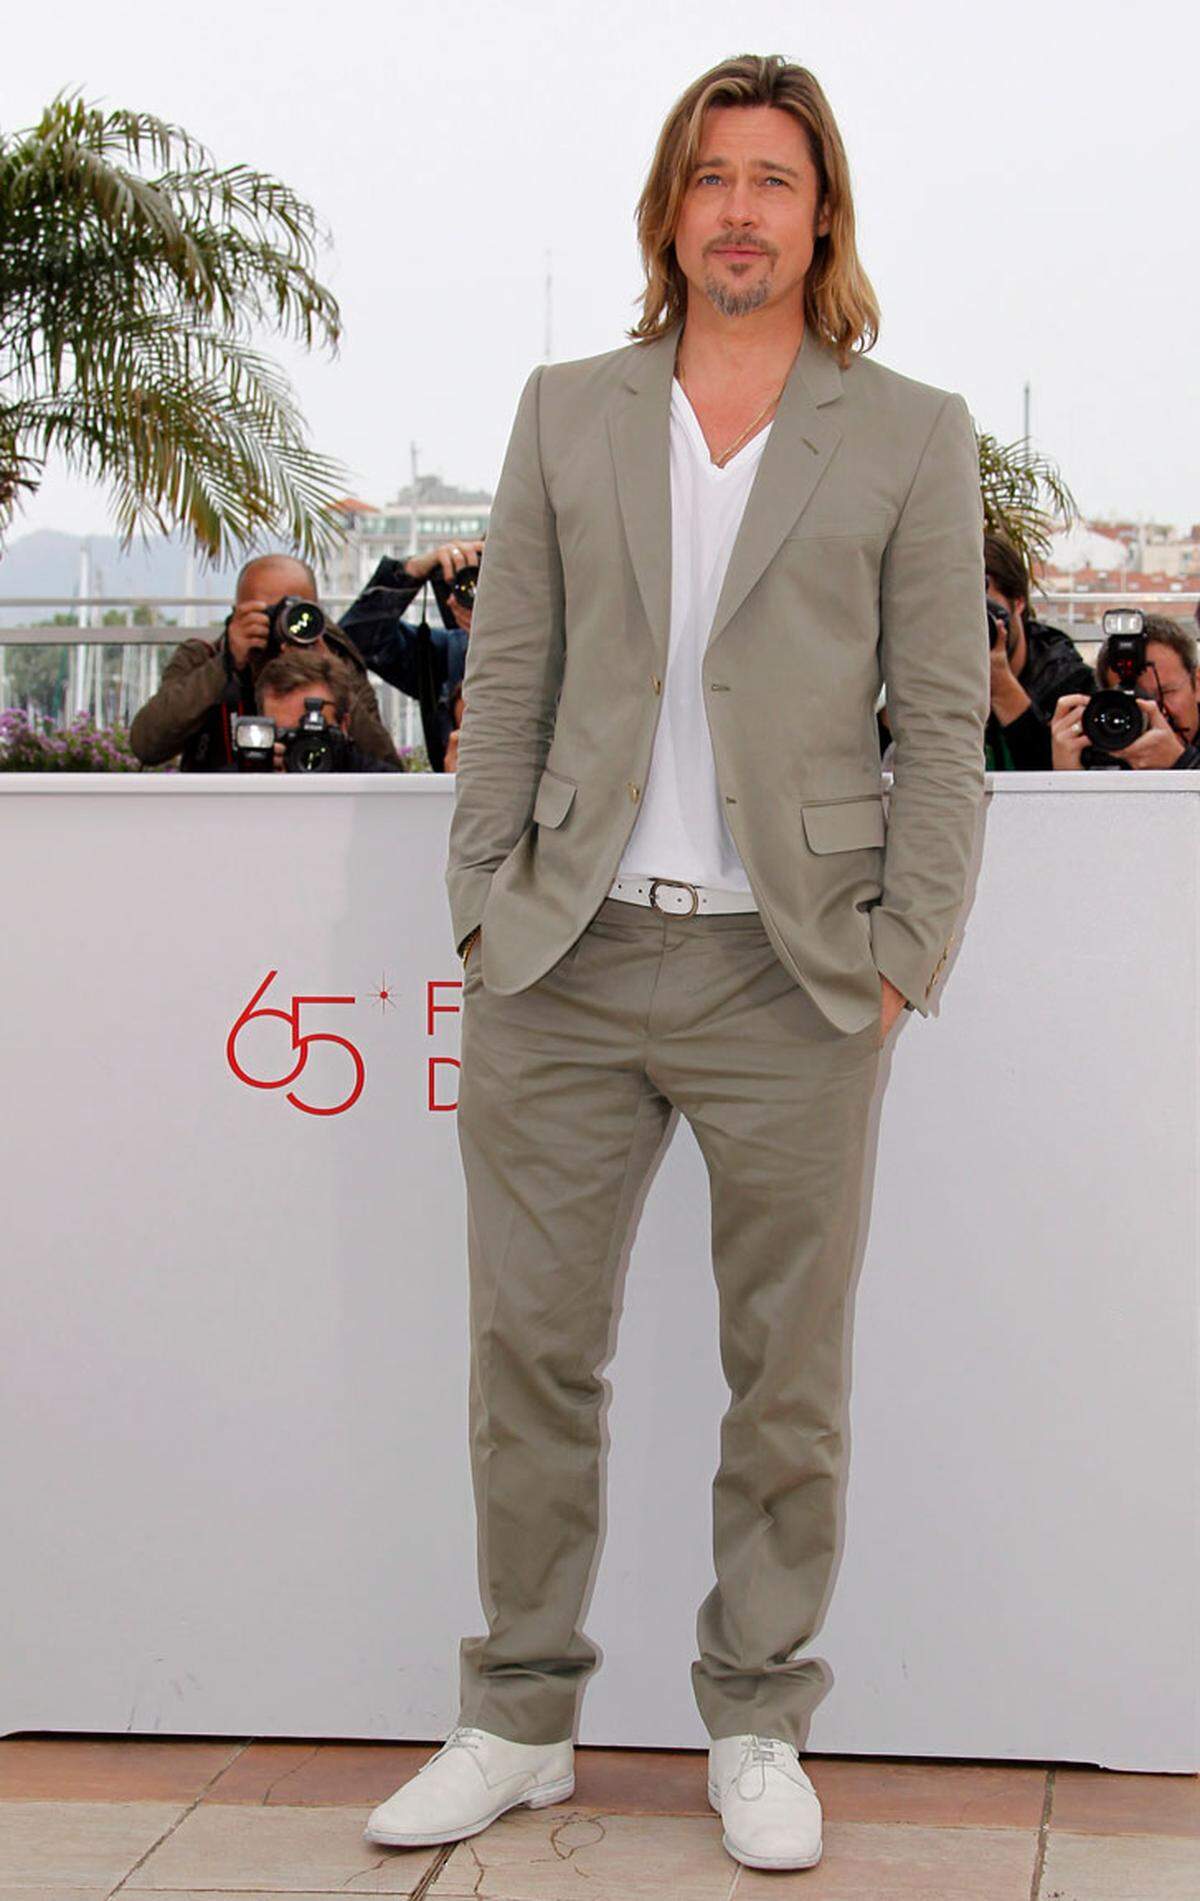 Brad Pitt kam ohne seine bessere Hälfte Angelina Jolie, gab keine Details über die bevorstehende Vermählung bekannt und posierte ganz lässig im Gucci-Outfit.